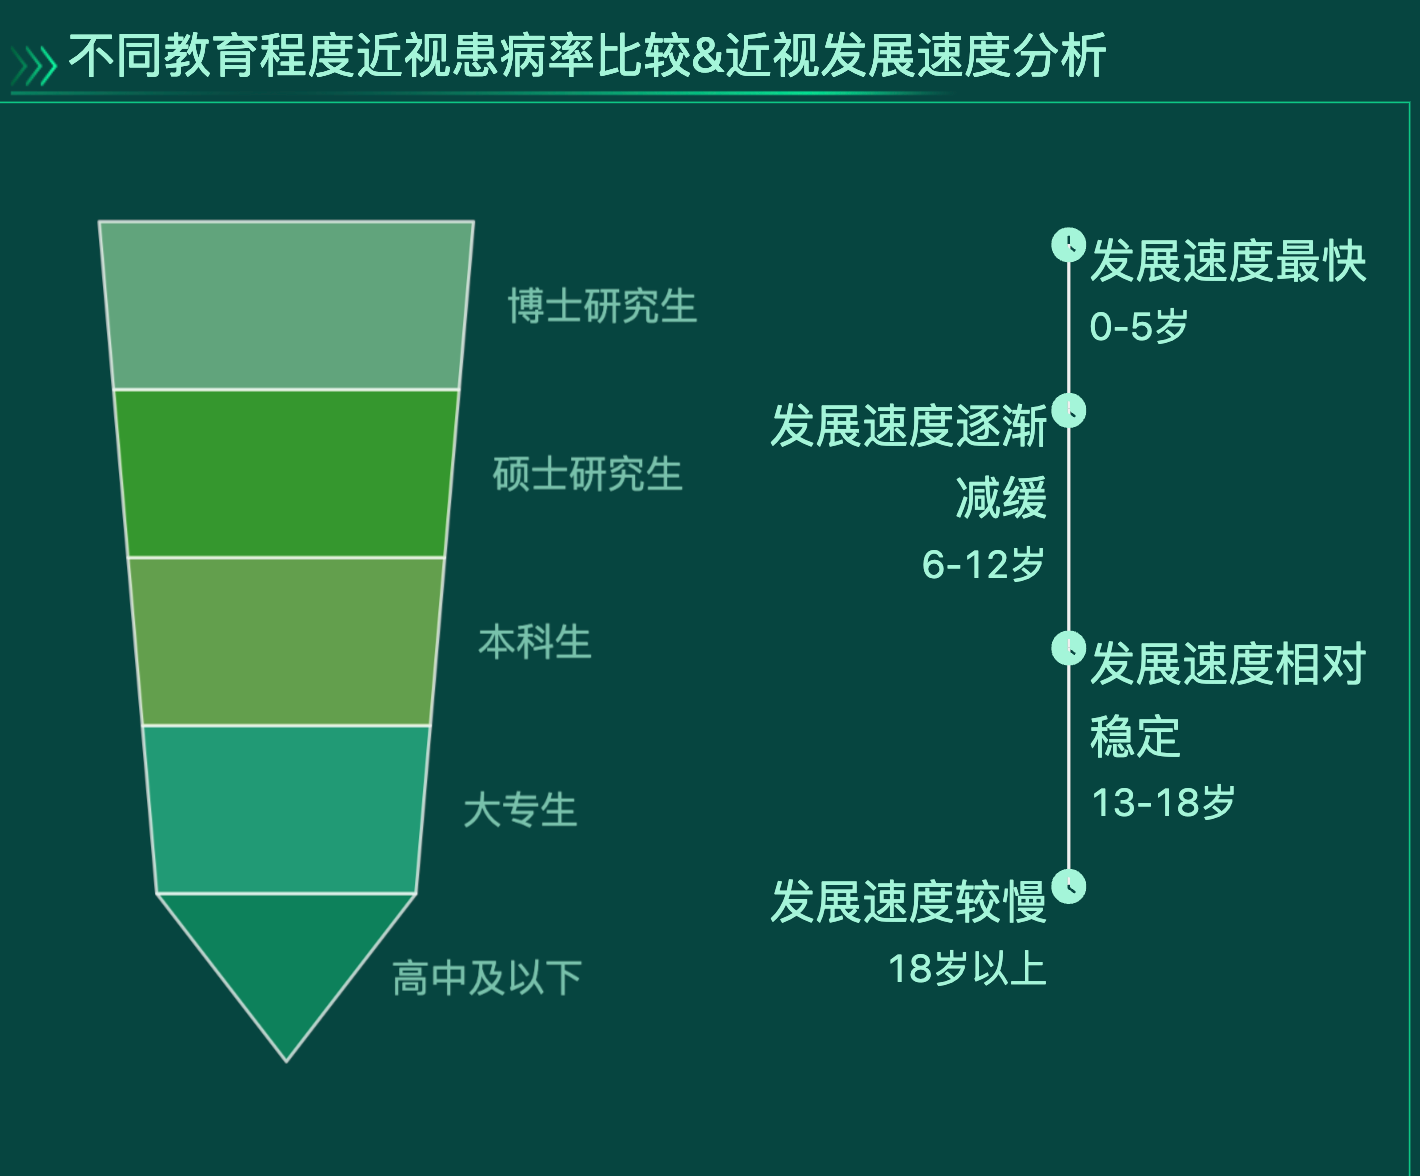 中国近视人口-迪赛智慧数